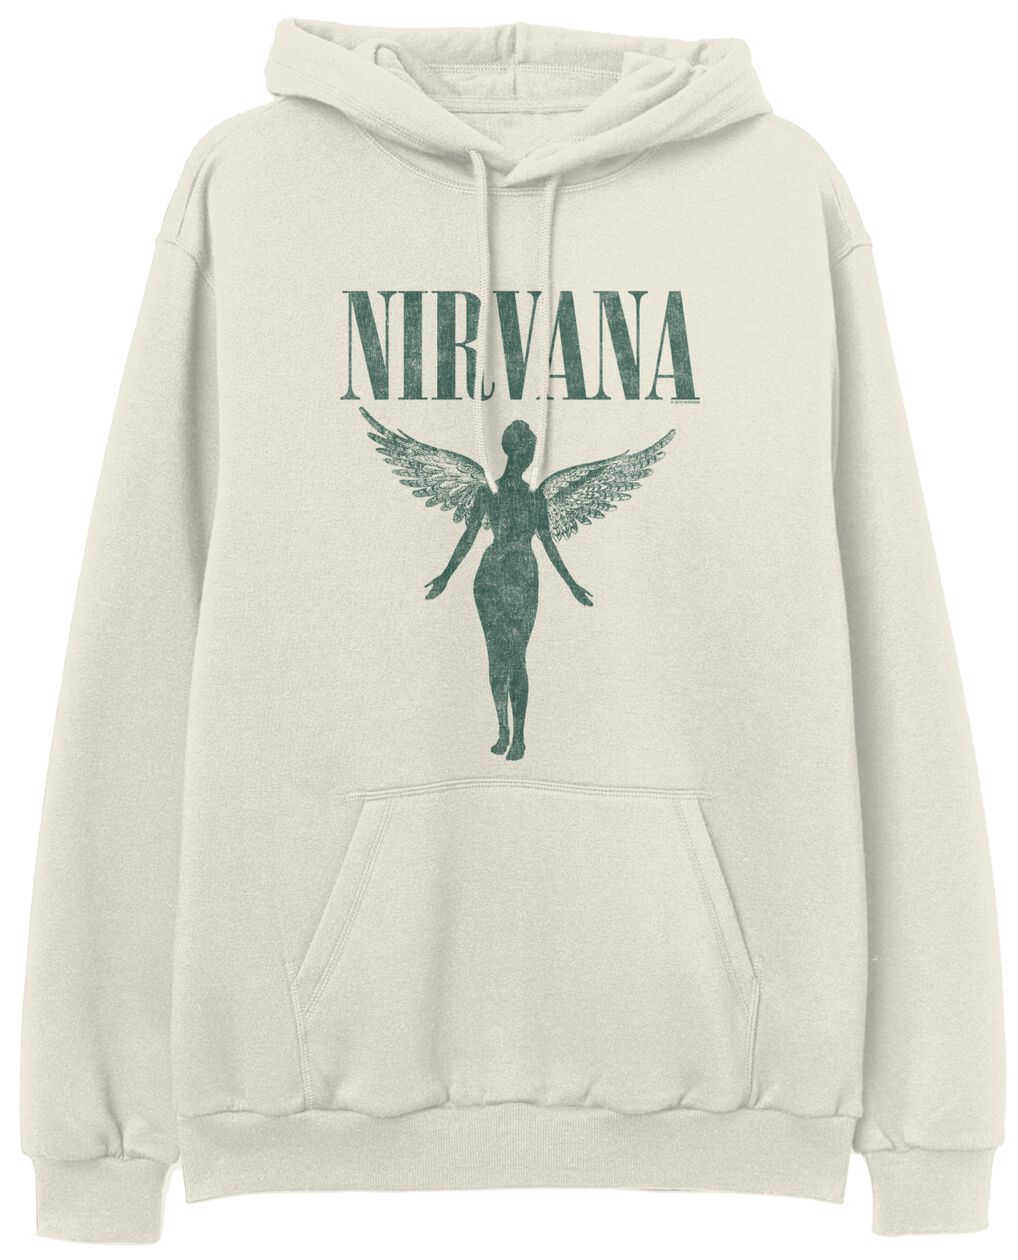 Nirvana Kapuzenpullover - Angel - S bis XXL - für Männer - Größe L - beige  - Lizenziertes Merchandise!